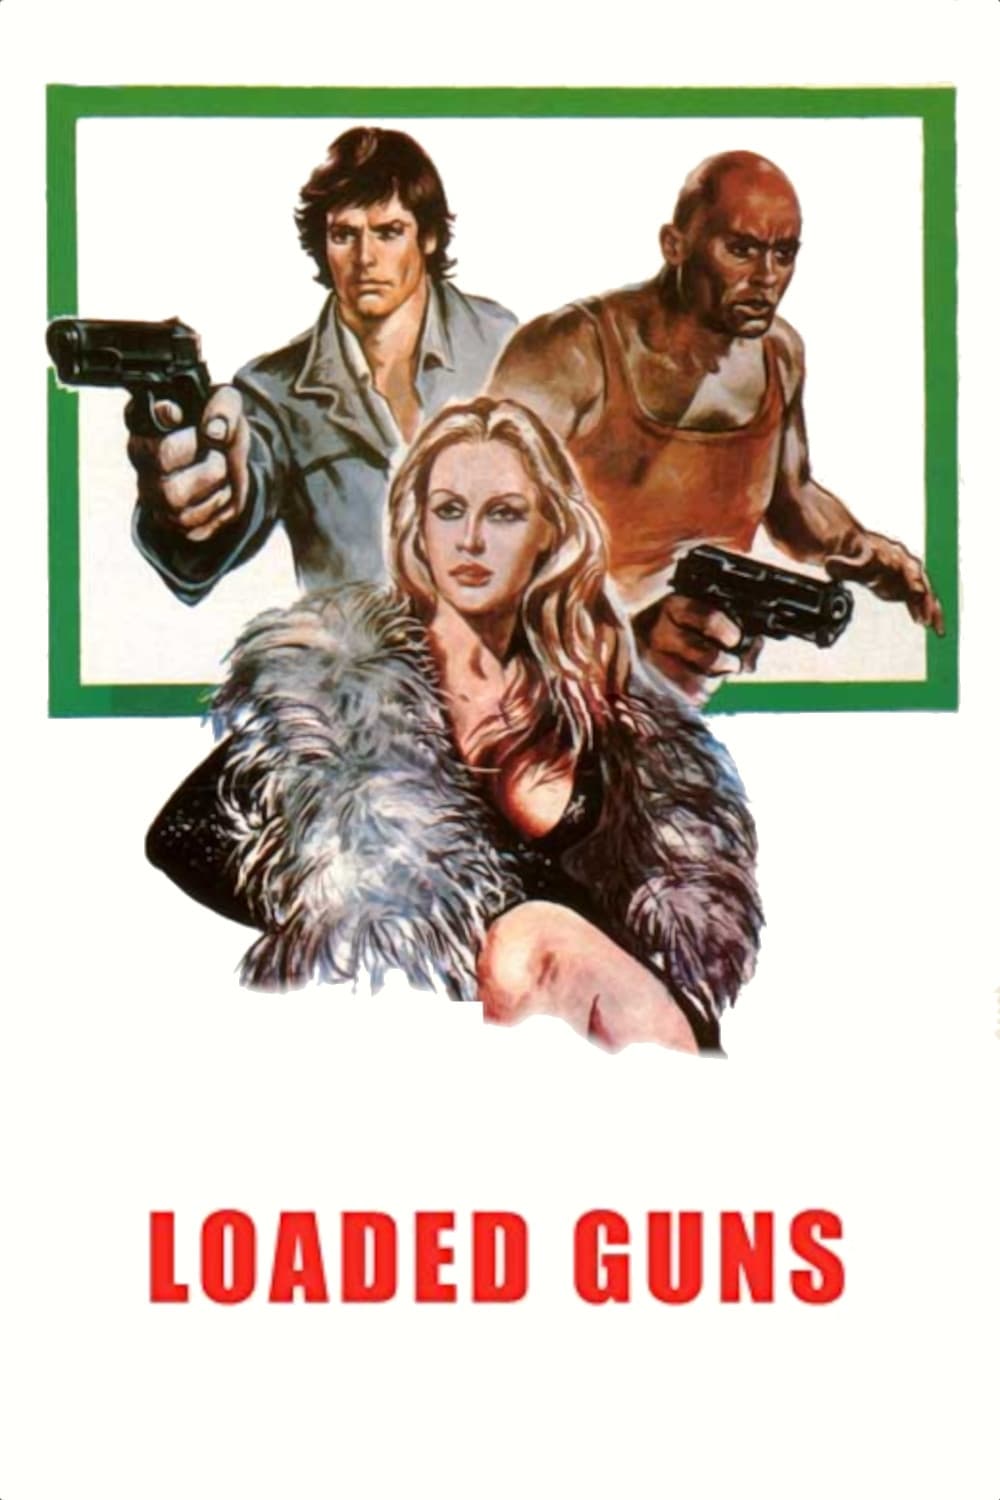 Loaded Guns (1975)